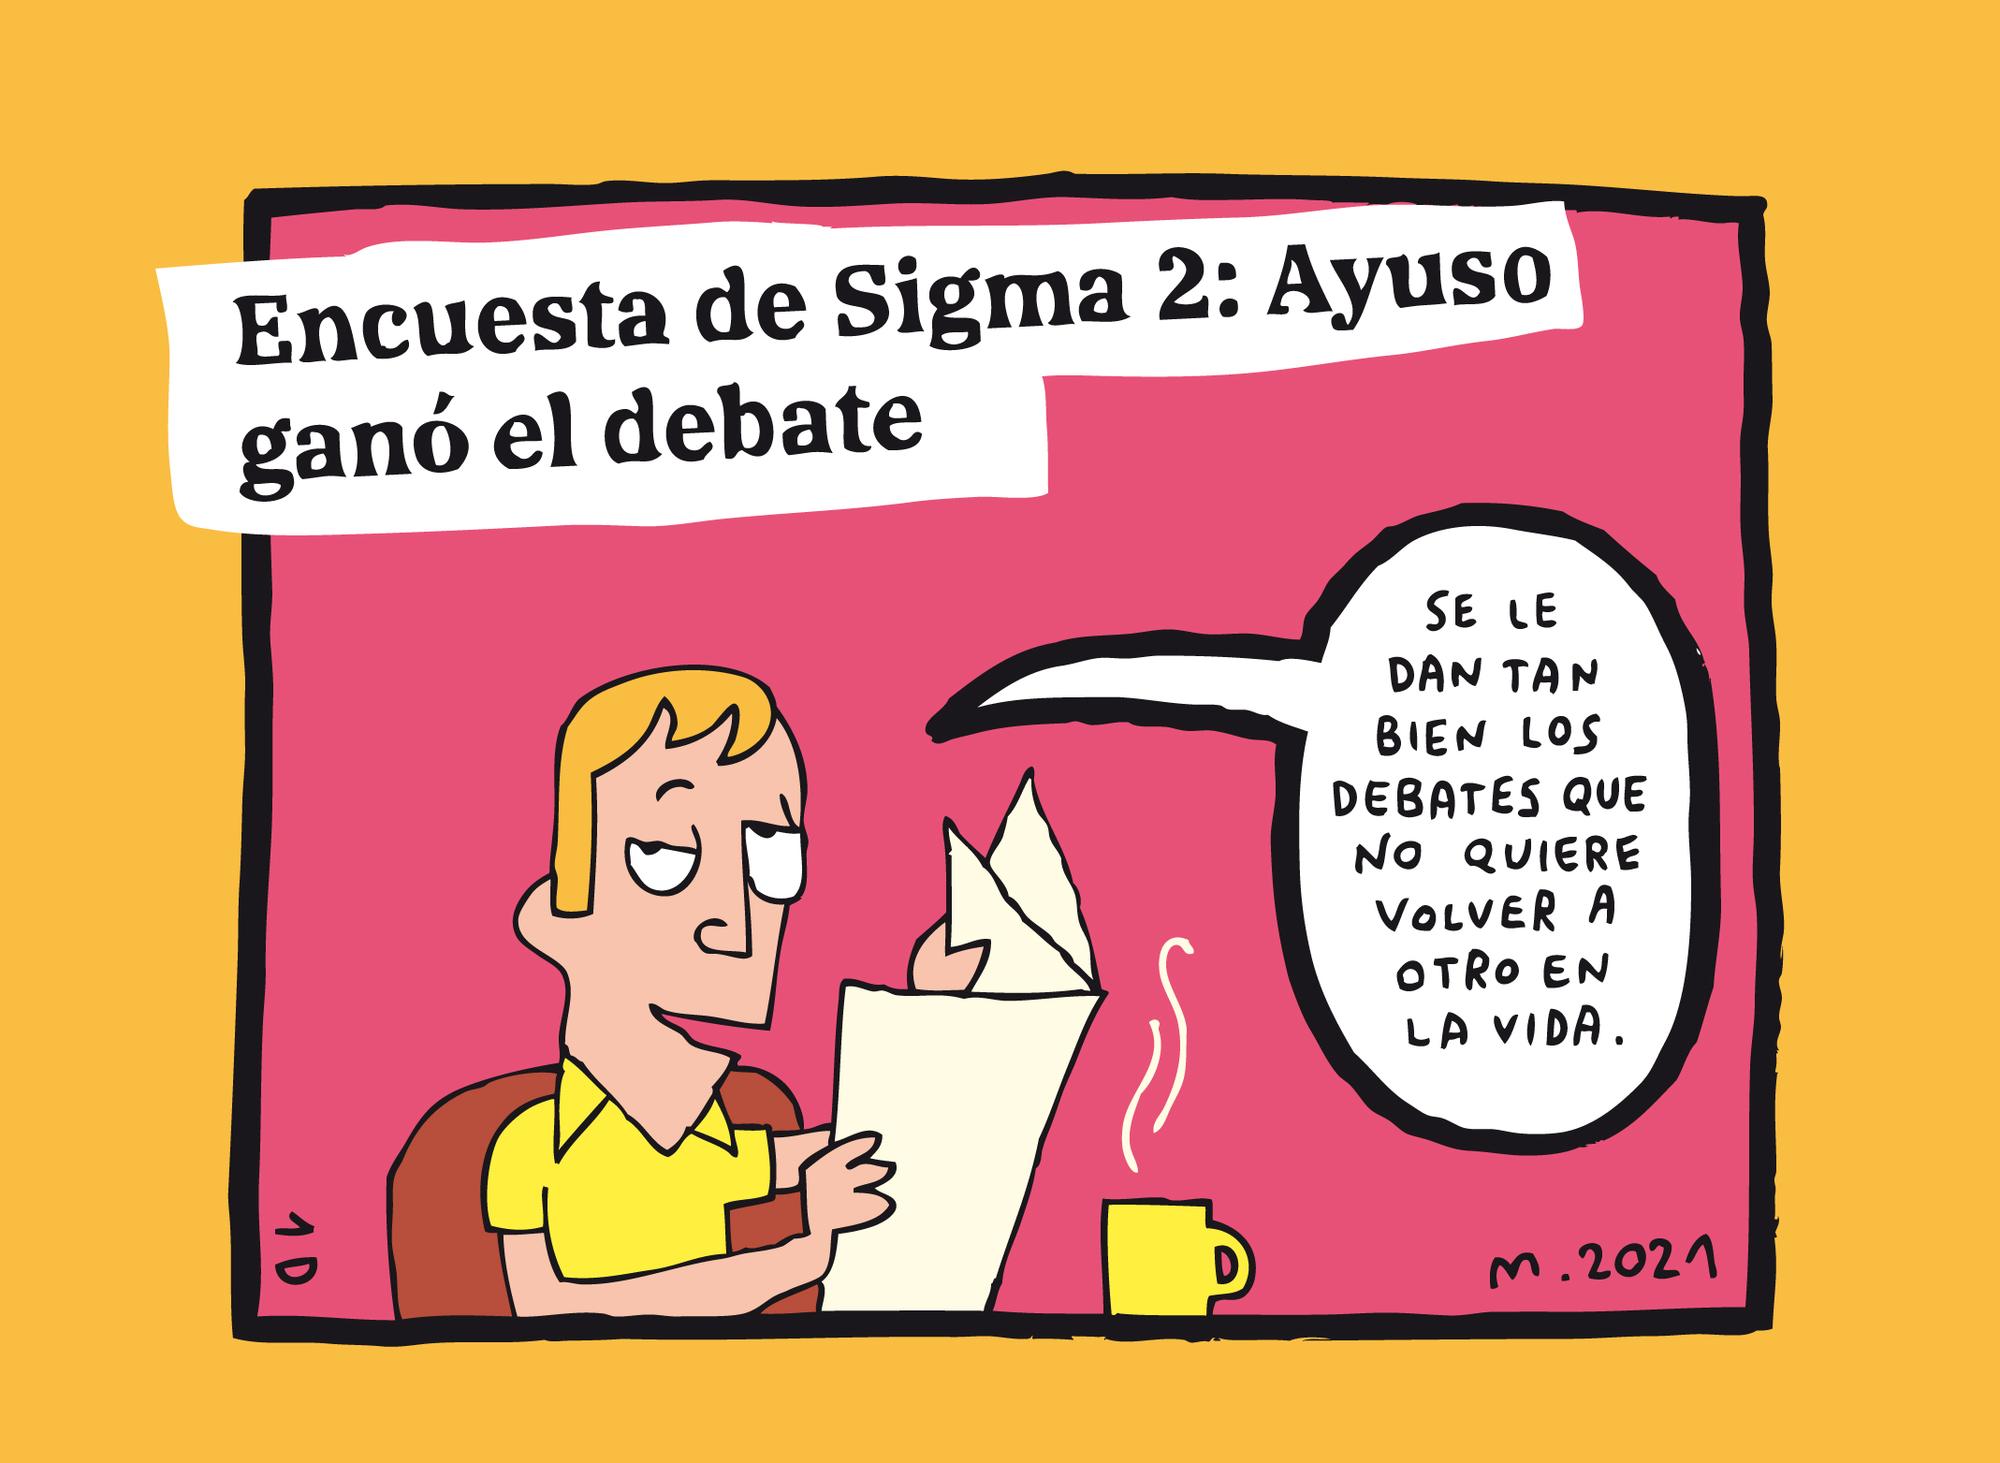 Ayuso ganó el debate, por Mauro Entrialgo